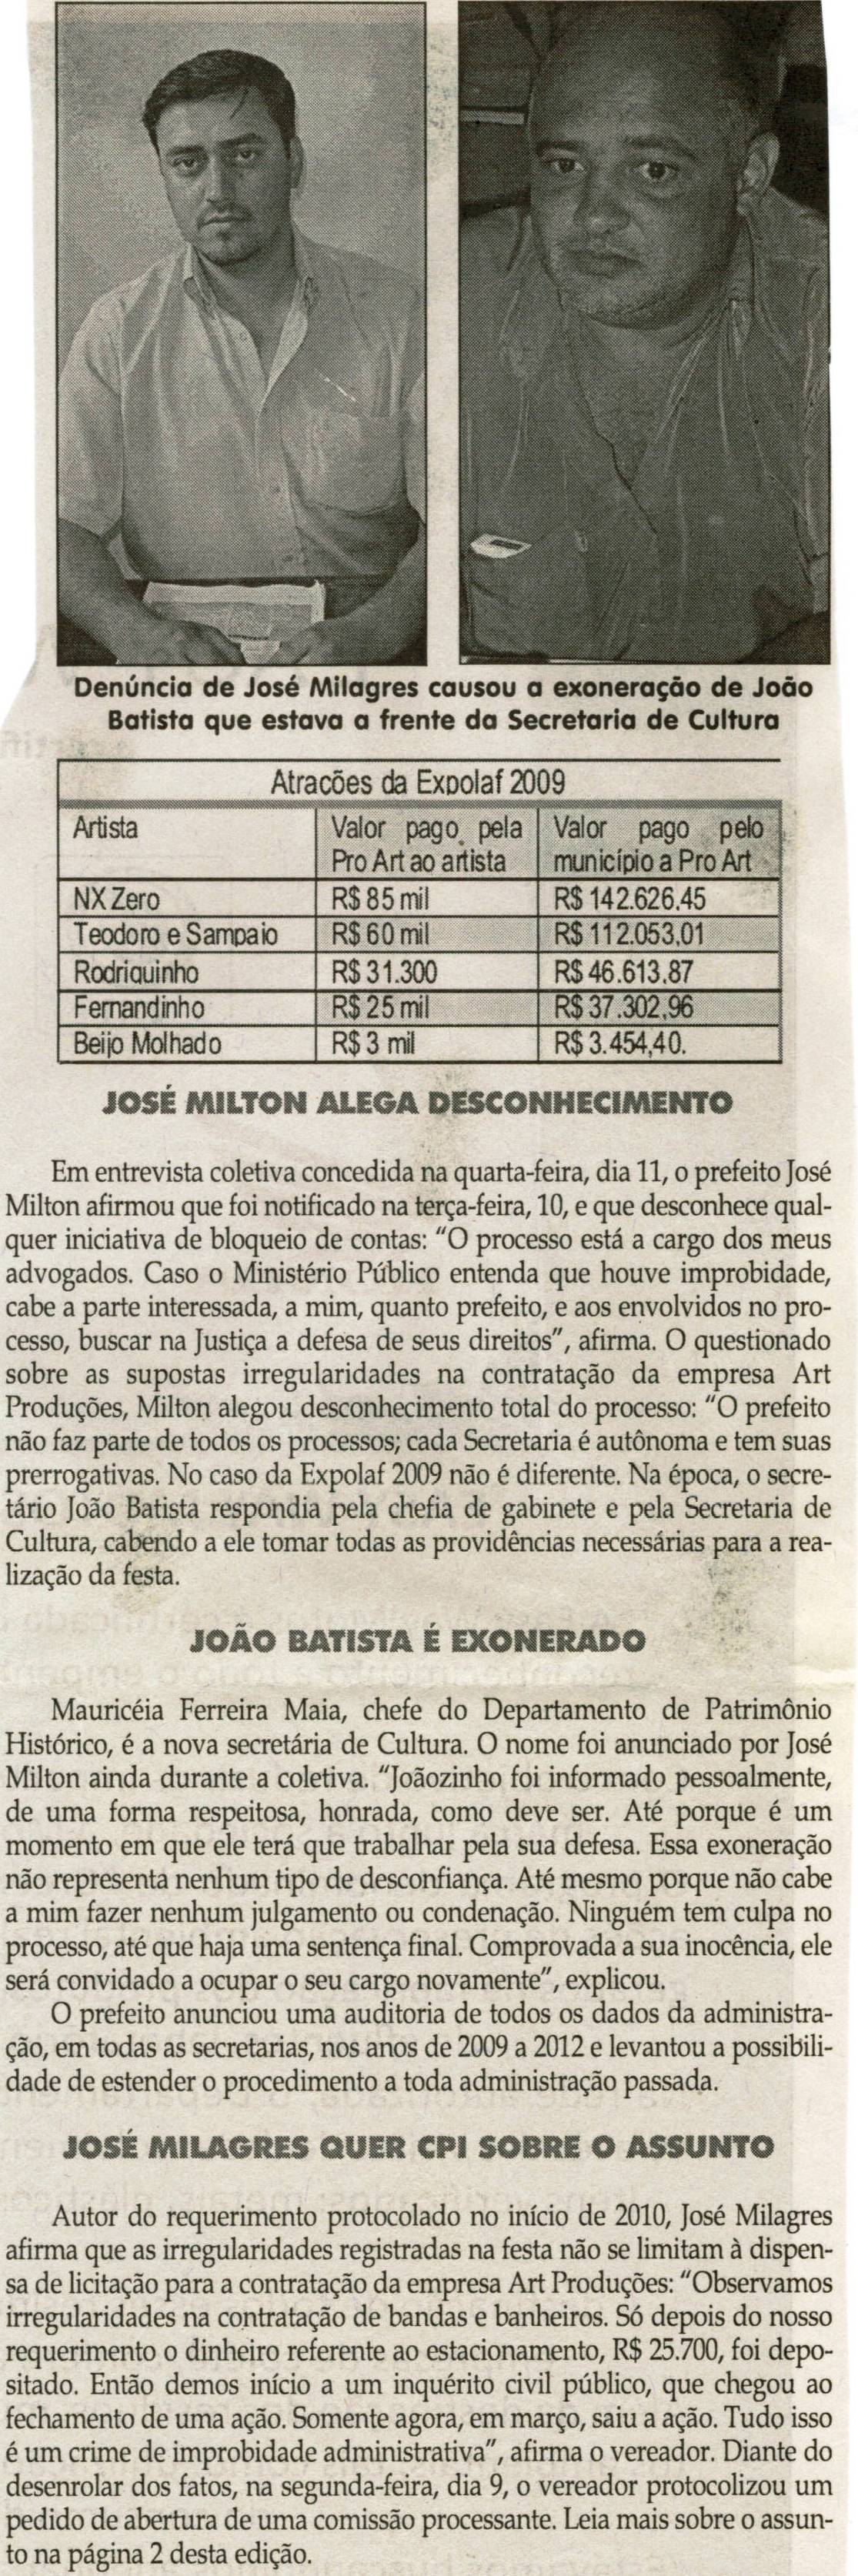 [Vereador José Milagres denuncia irregularidades na Expolaf]. Jornal Correio da Cidade, 14 abr. 2012, p. 04.